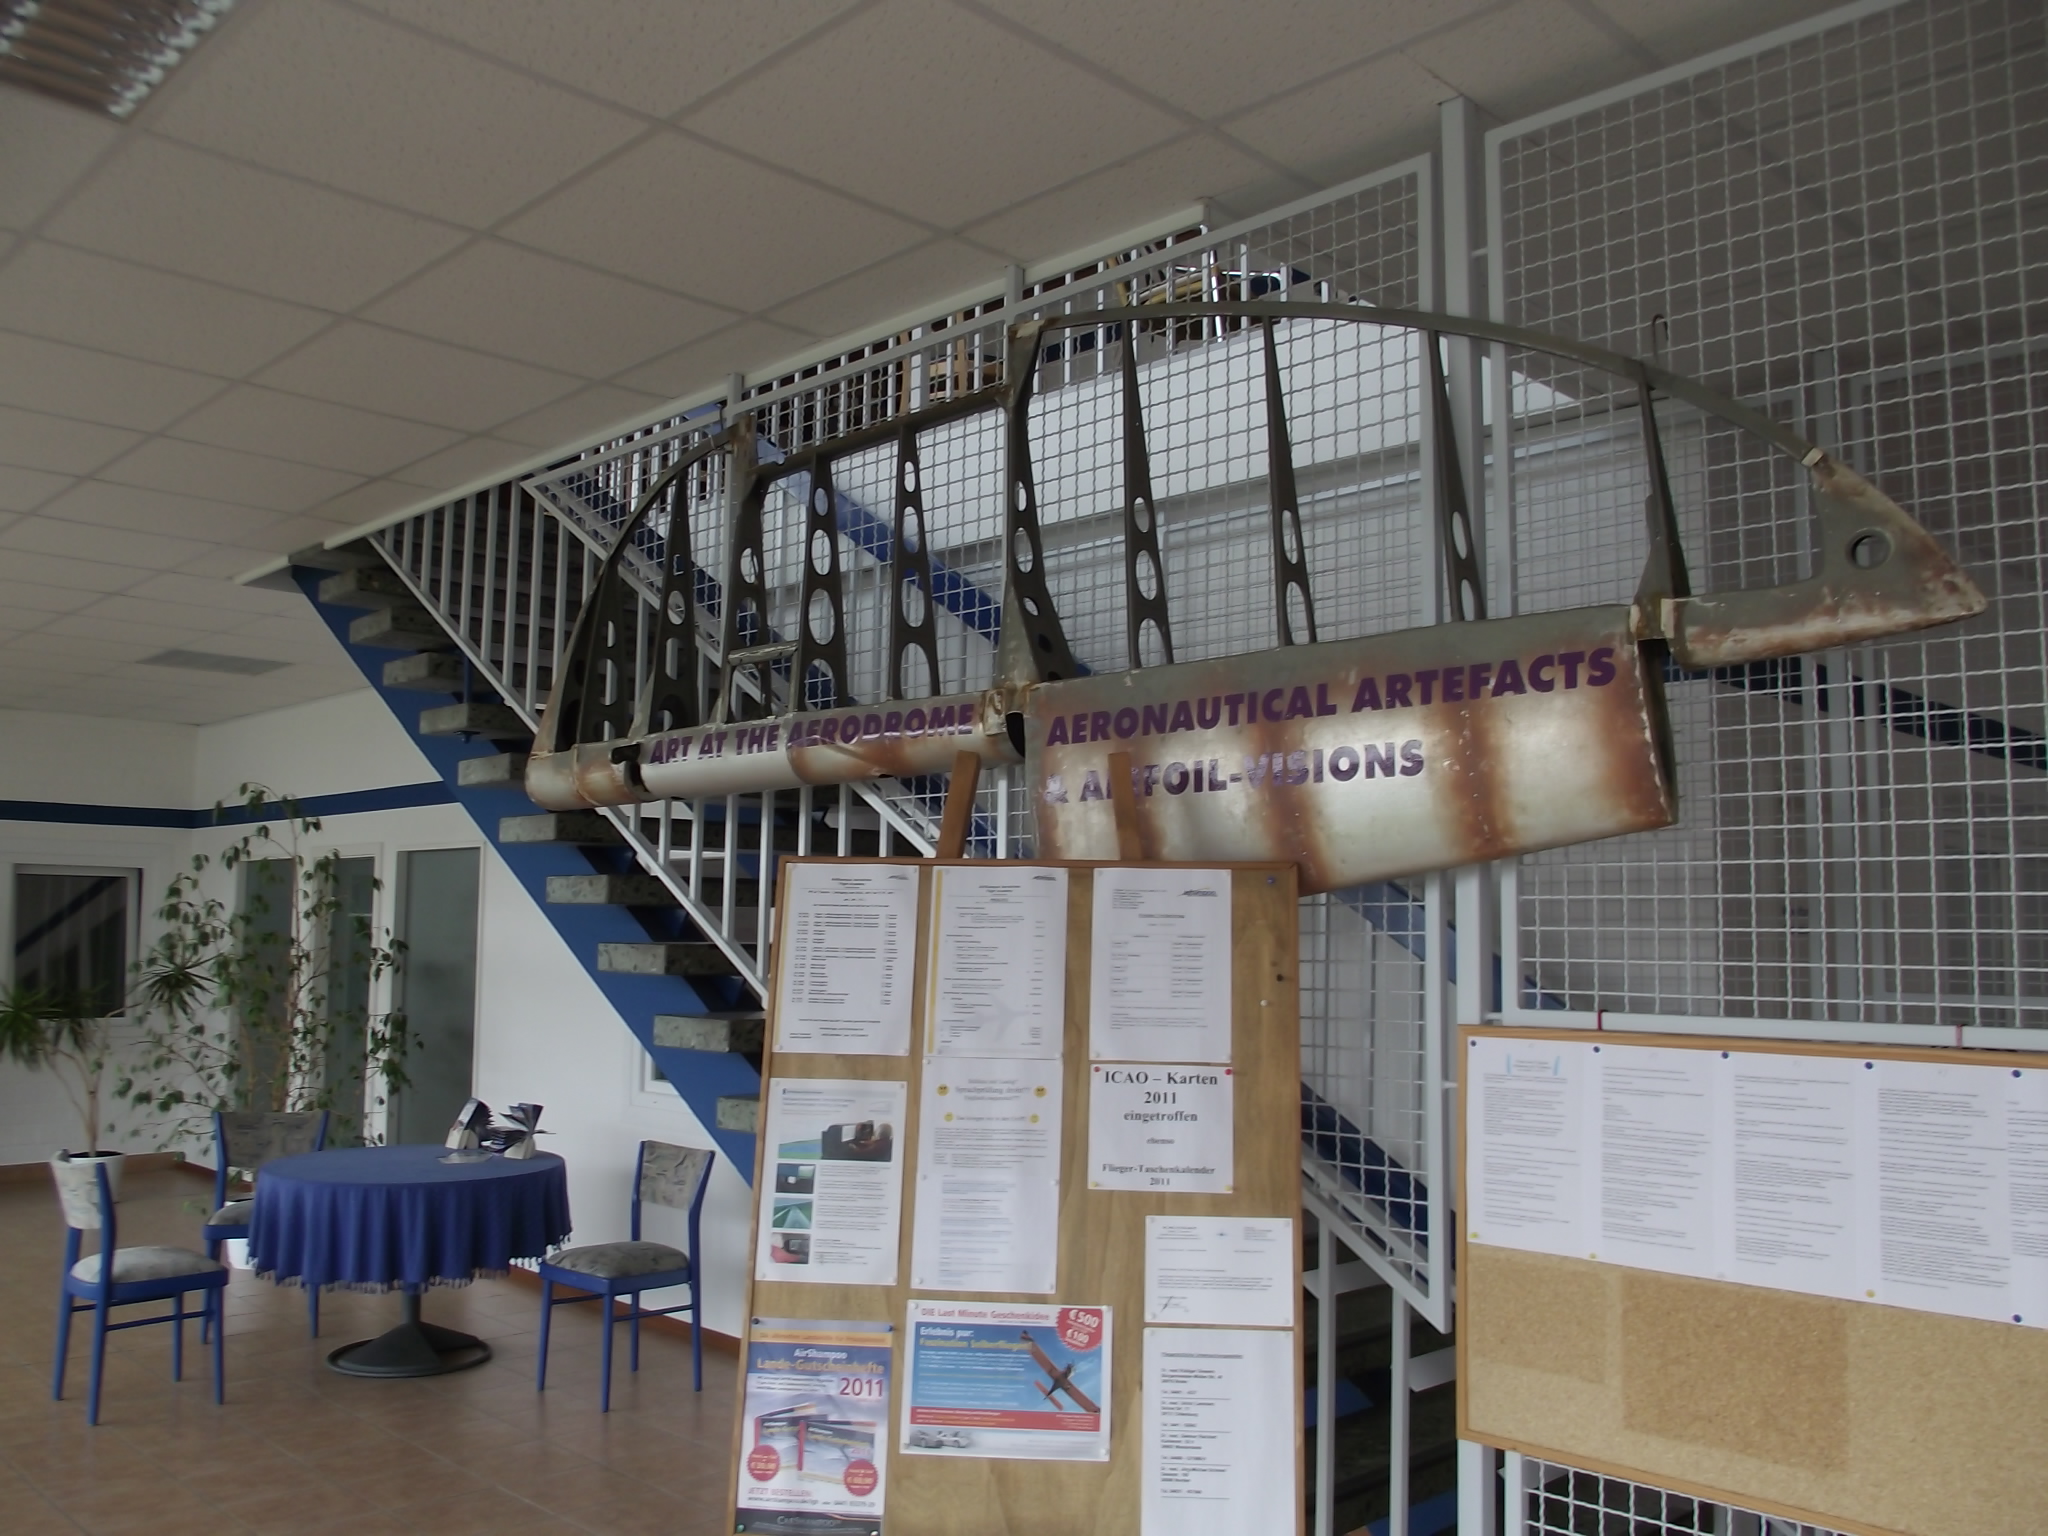 Airshampoo Flugschule, Charter und mehr in Ganderkesee